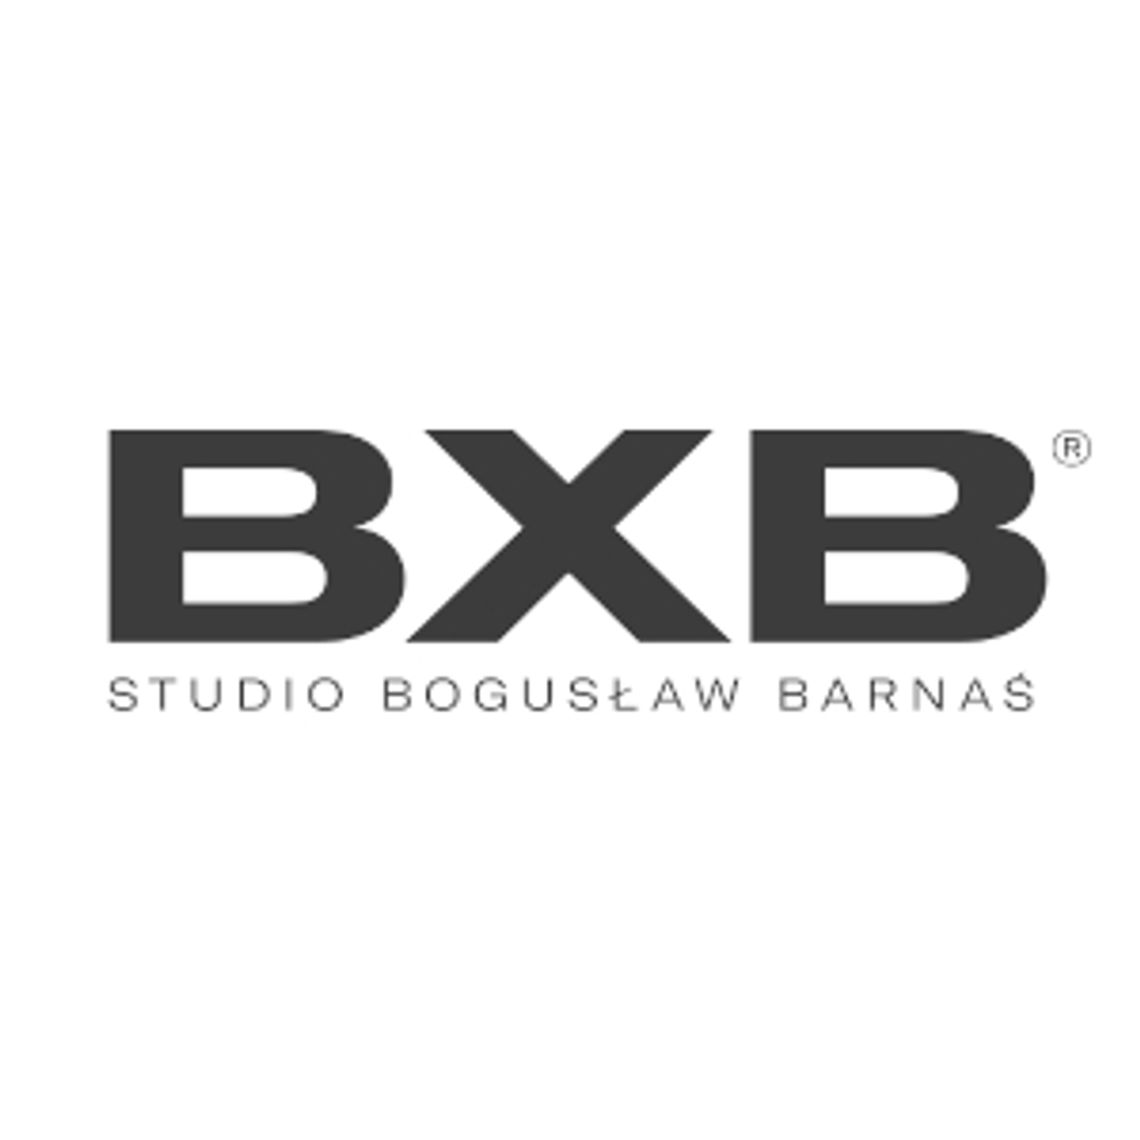 Nowatorskie projekty domów - BXB studio